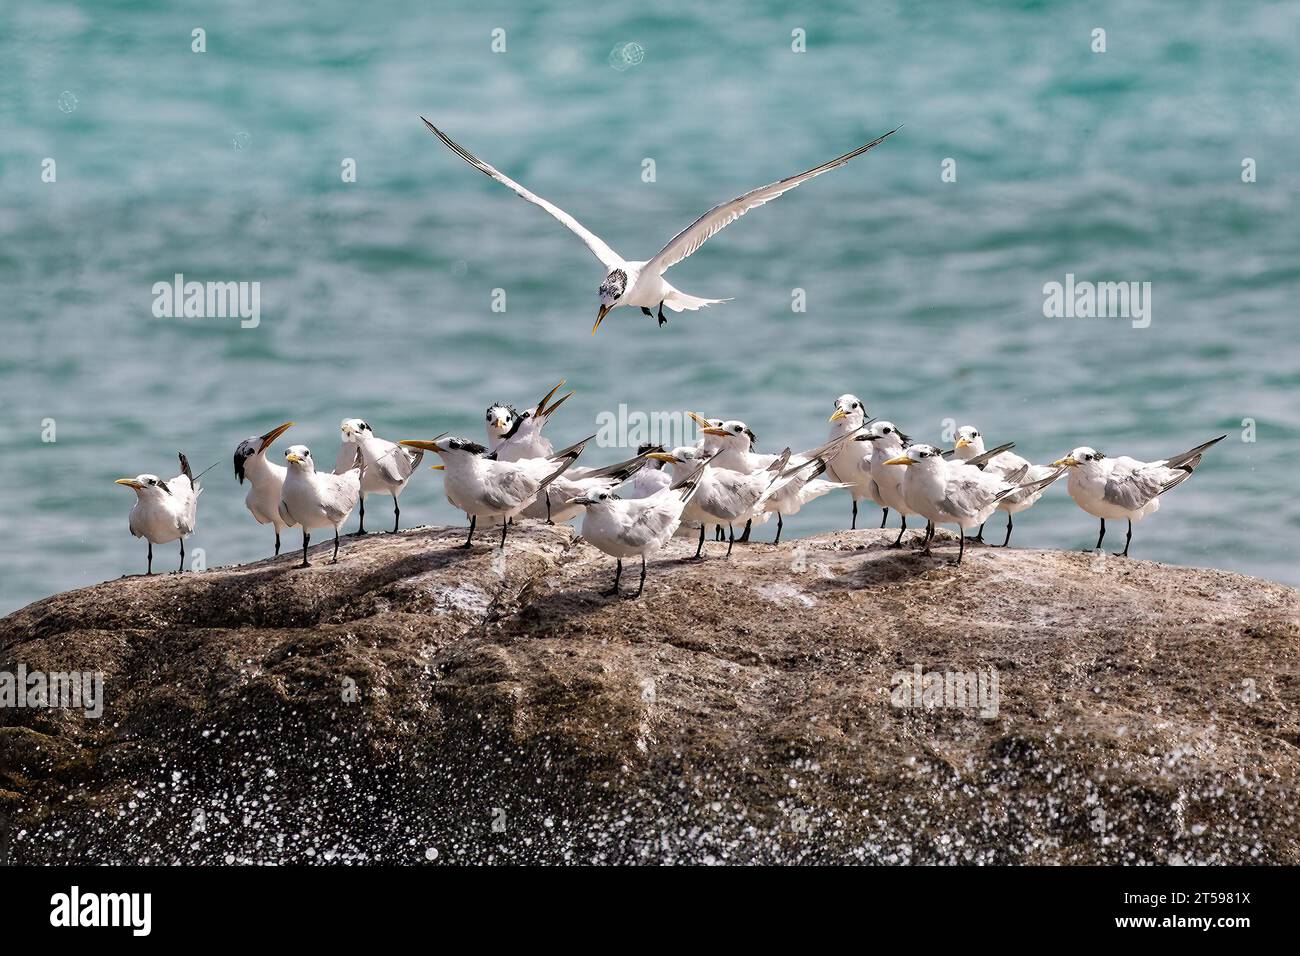 Gruppe von Königlichen Ternen (Thalasseus maximus), die auf Felsen vor der Küste der Insel Aruba stehen. Ein Vogel fliegt und versucht auf Felsen zu landen. Stockfoto